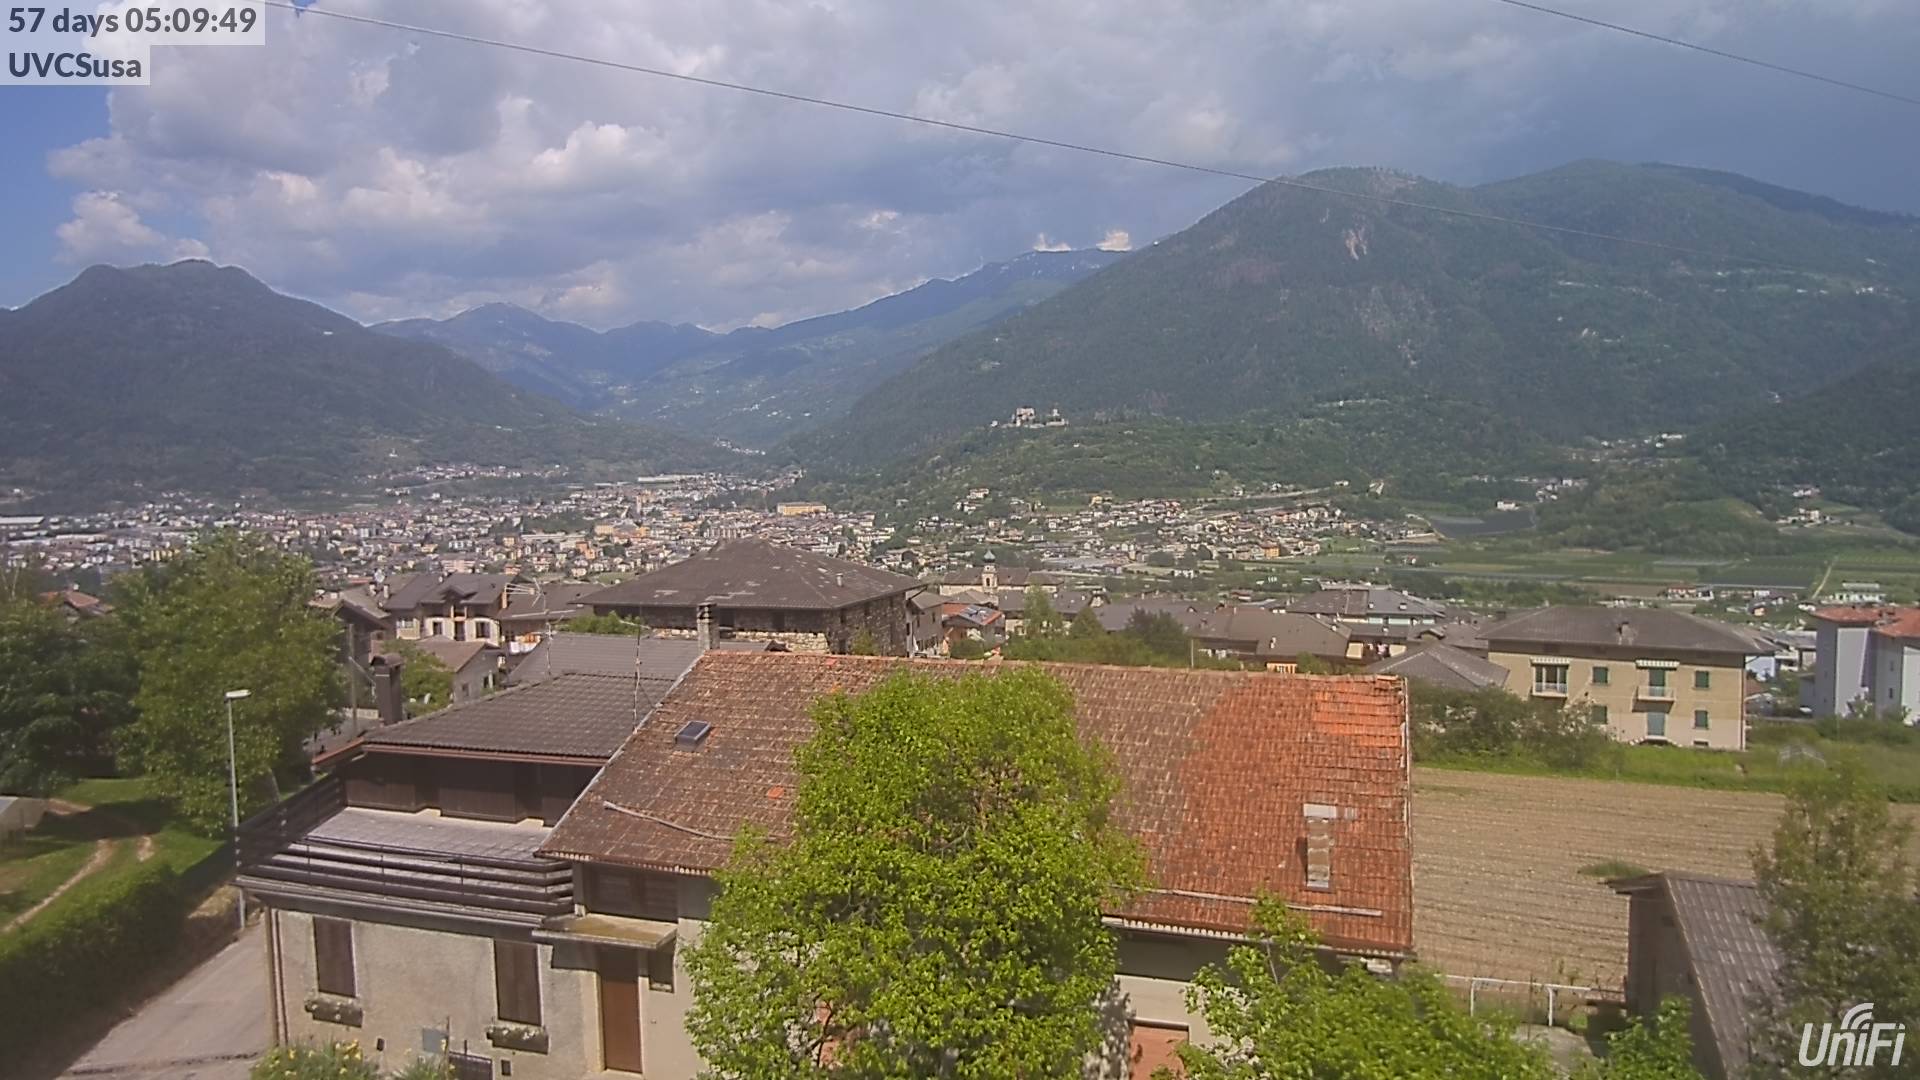 webcam Pergine Valsugana,  webcam provincia di Trento, 
                                            webcam Trentino-Alto Adige, webcam alpi